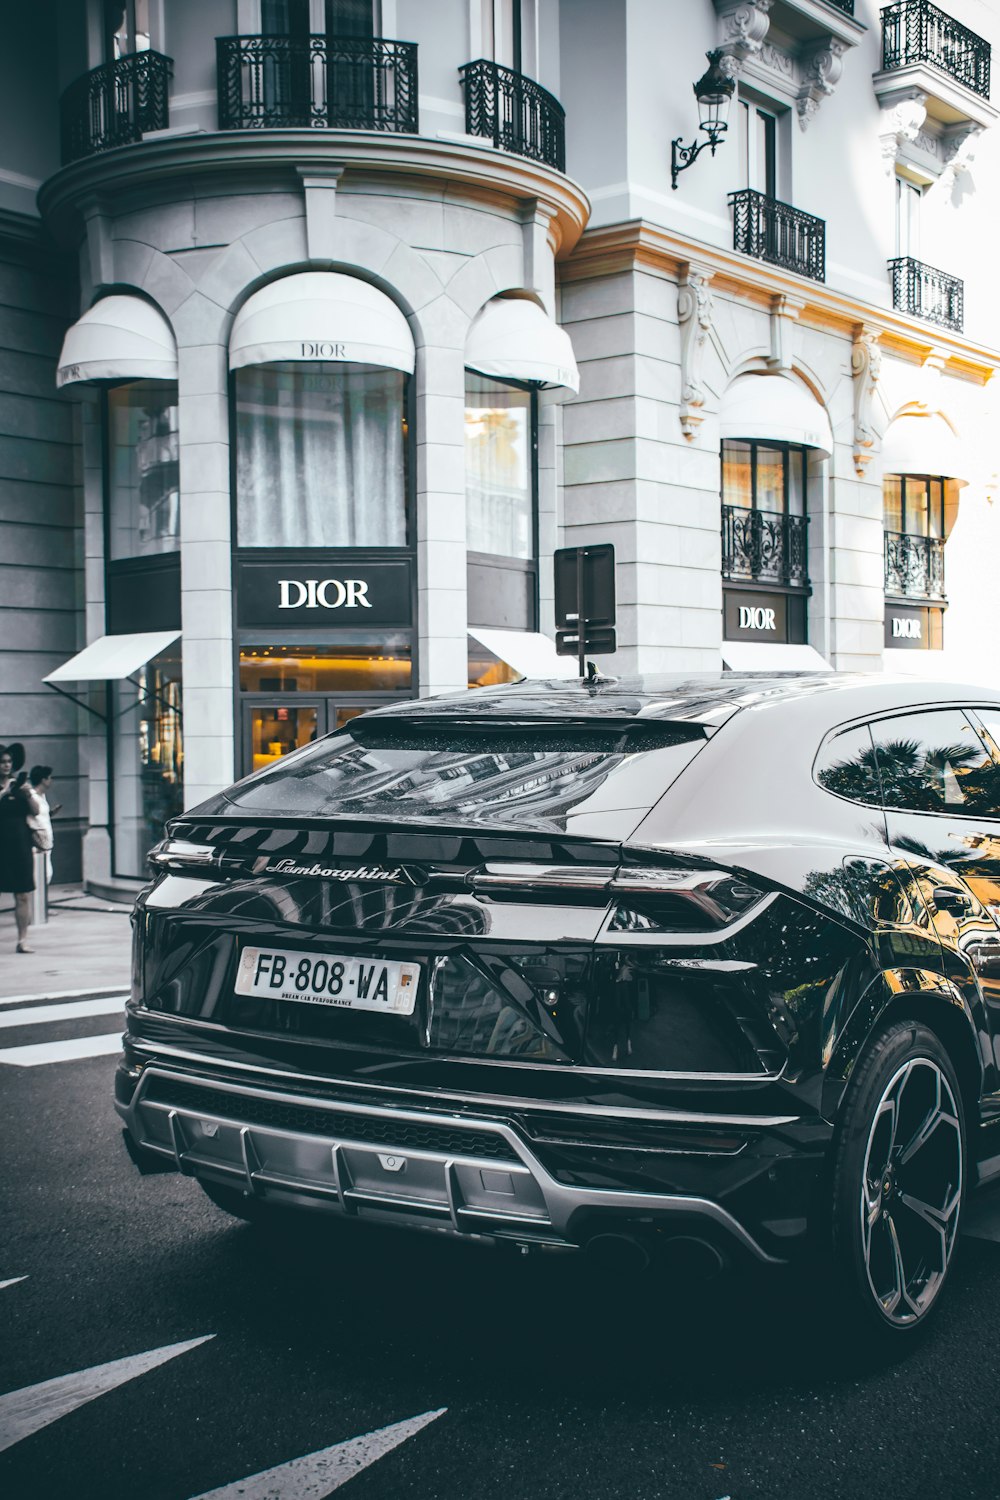 ディオールの店舗を横切る黒い車の写真